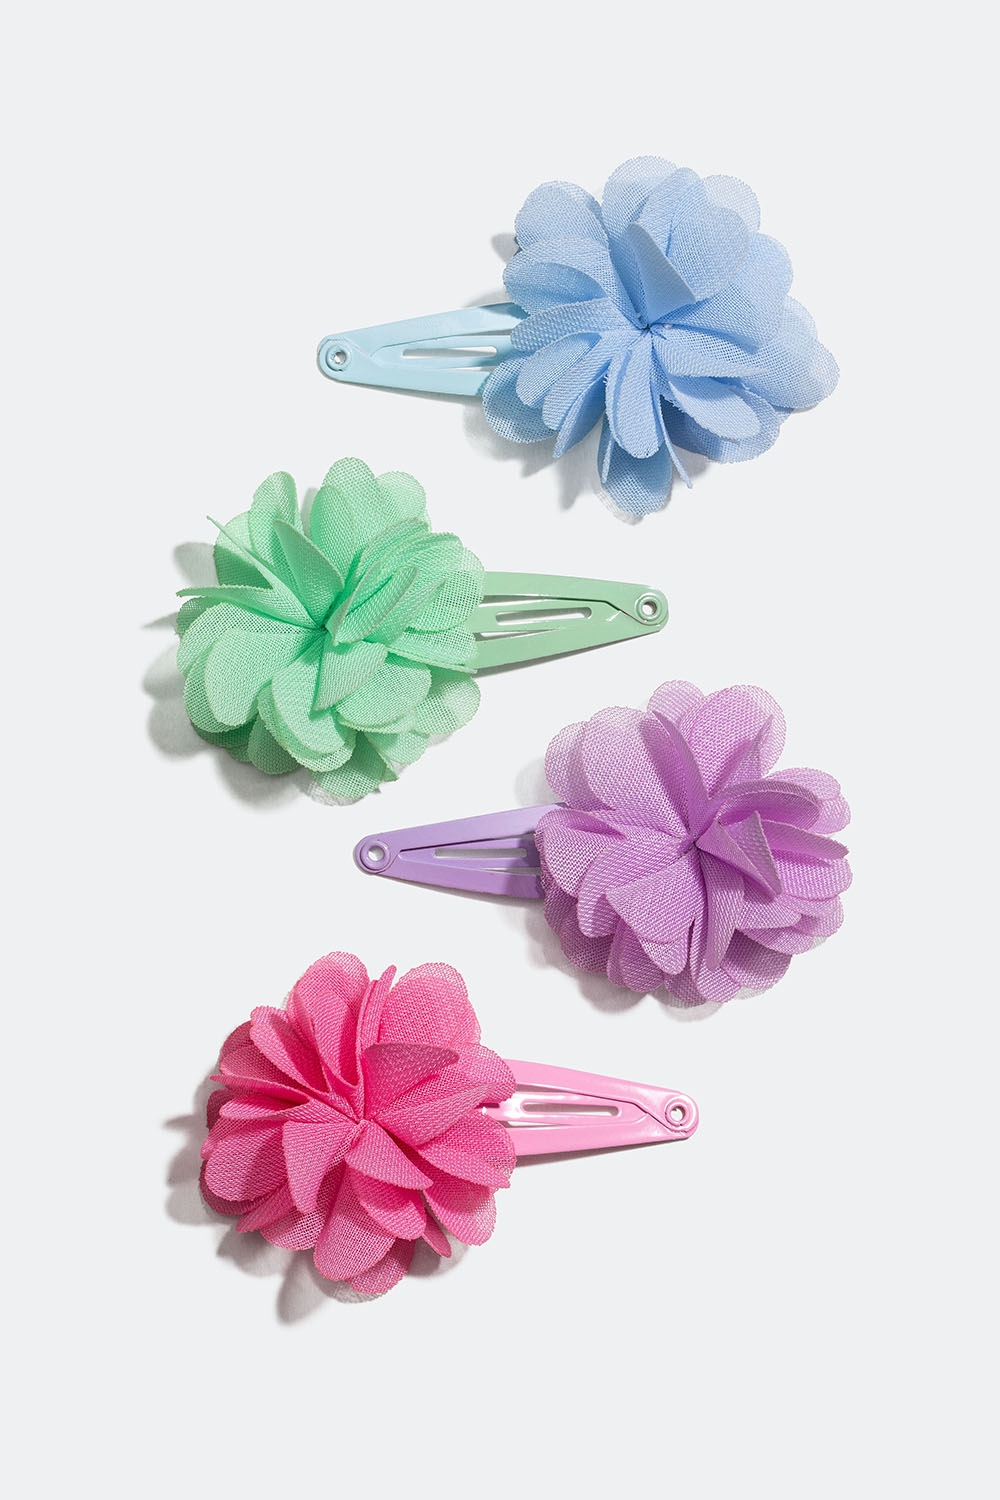 Hårspenner i blandede farger med blomster, 4-pakning i gruppen Barn / Hårtilbehør til barn / Hårspenner til barn hos Glitter (403000099900)